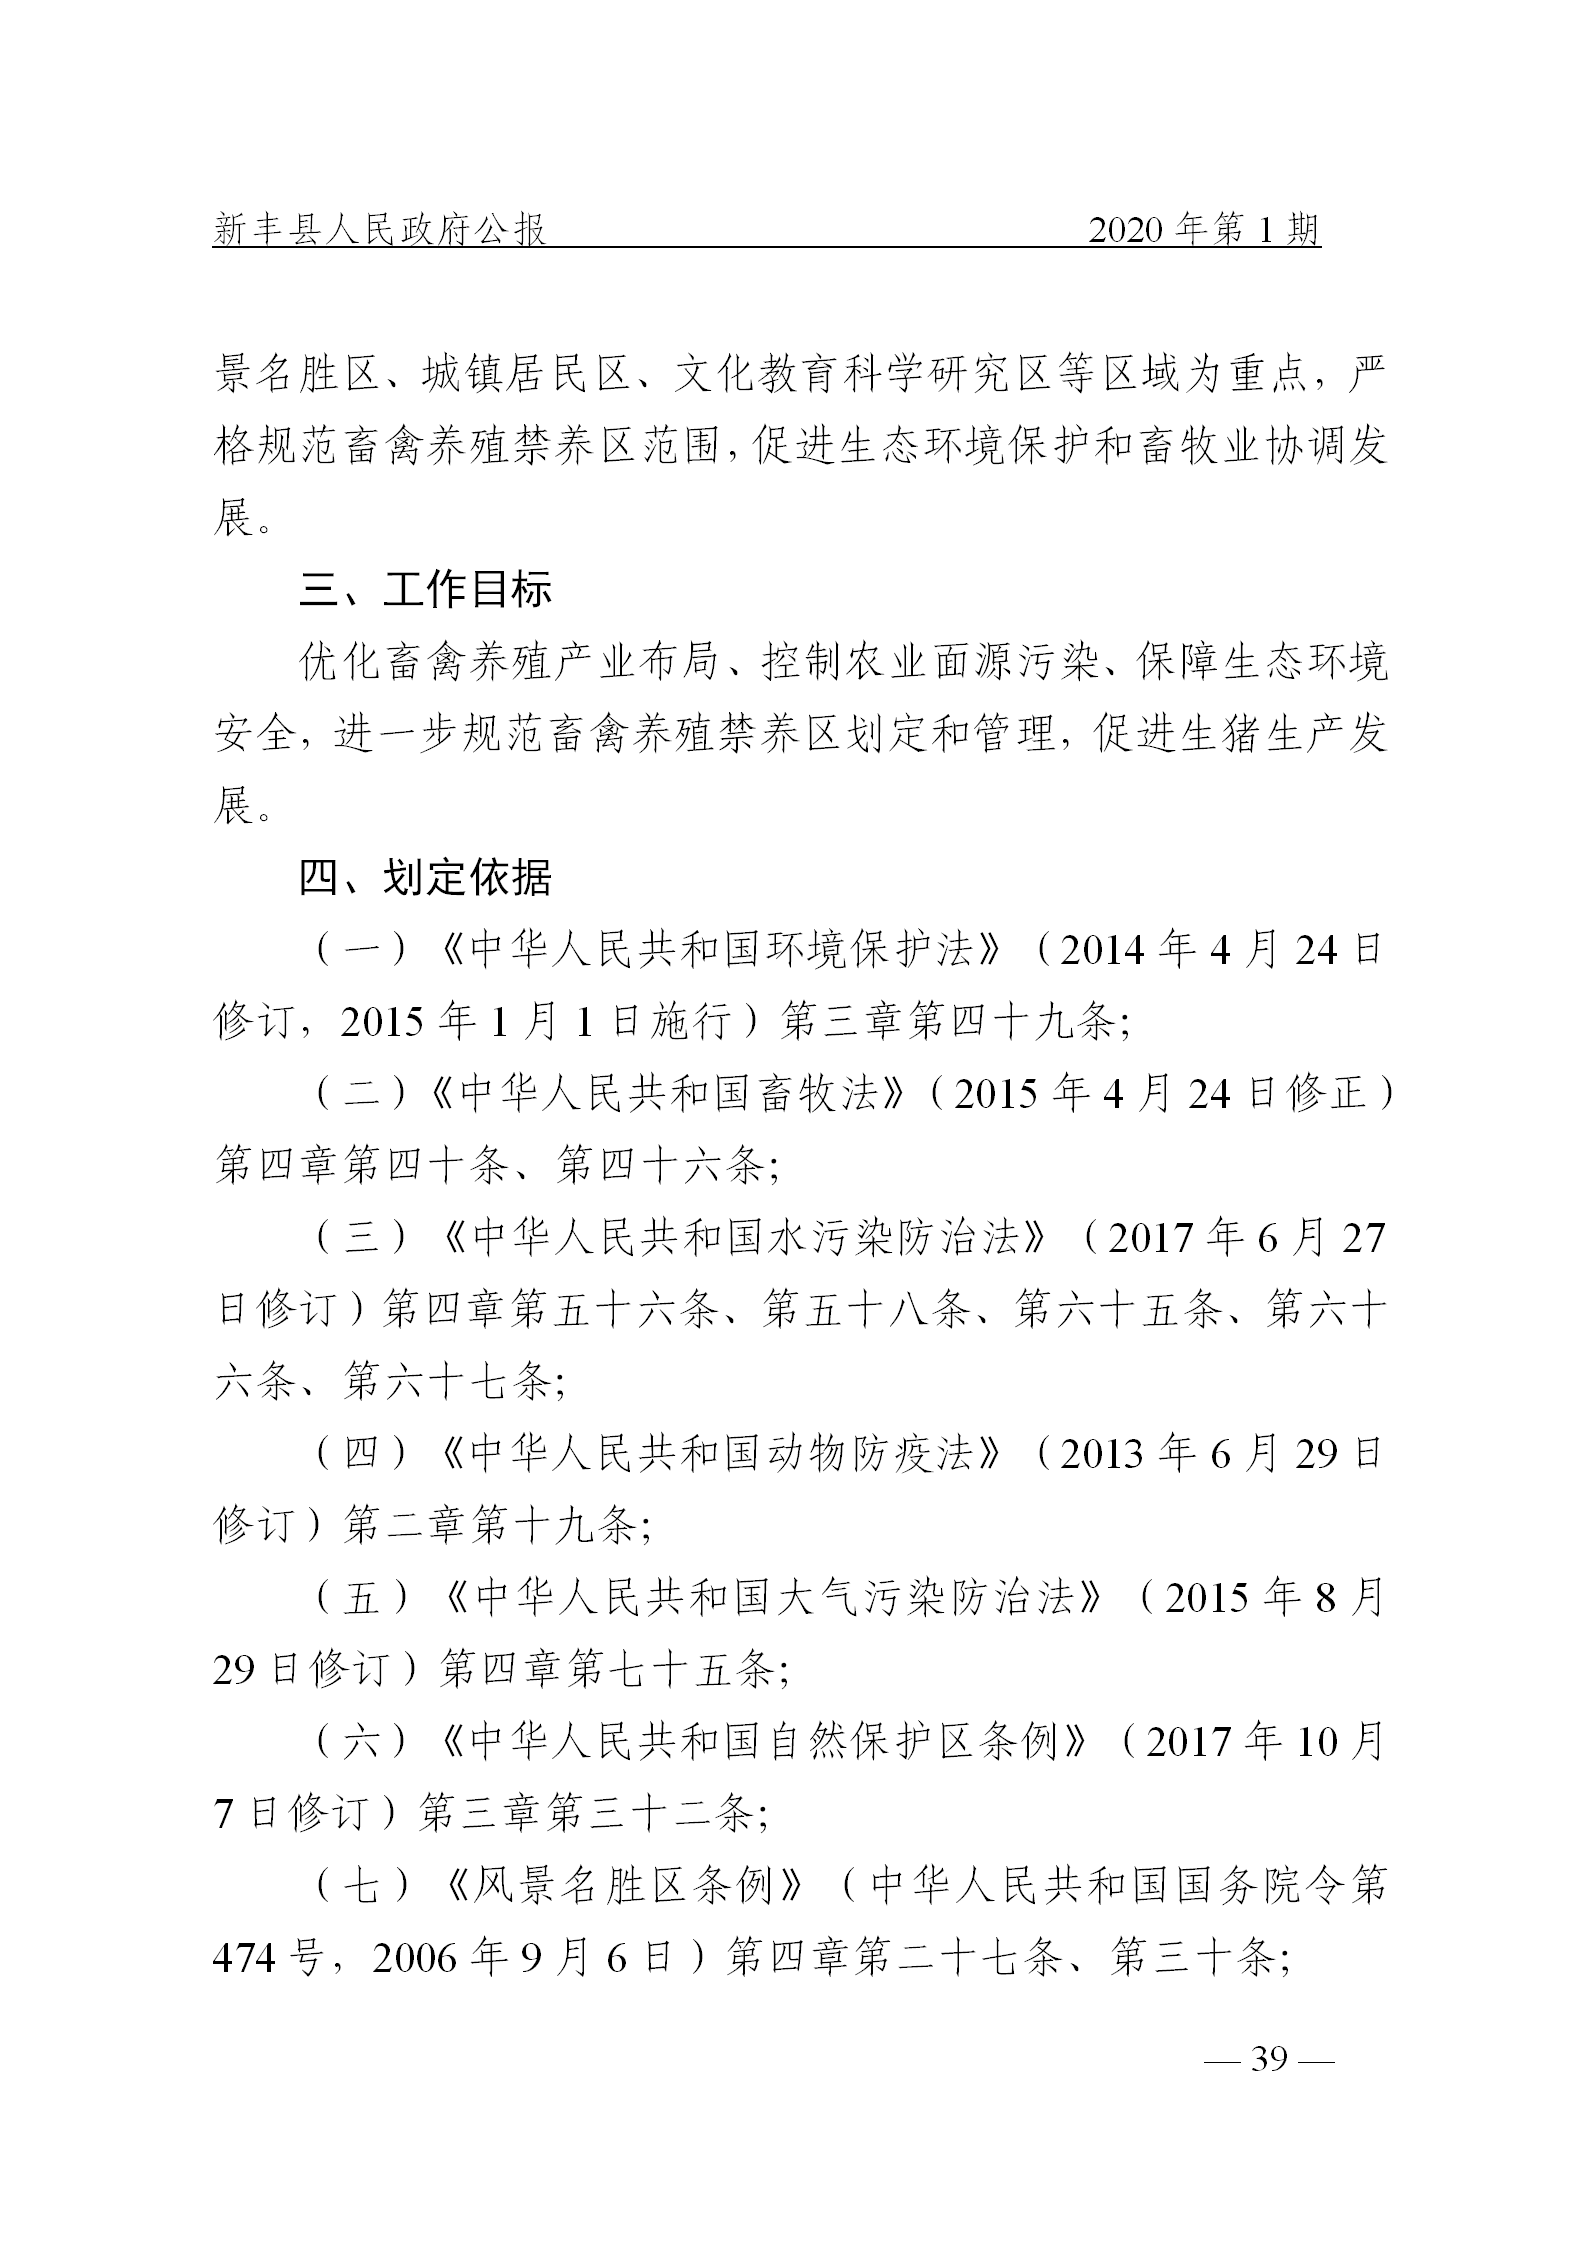 《新丰县人民政府公报》2020年第1期(1)_39.png